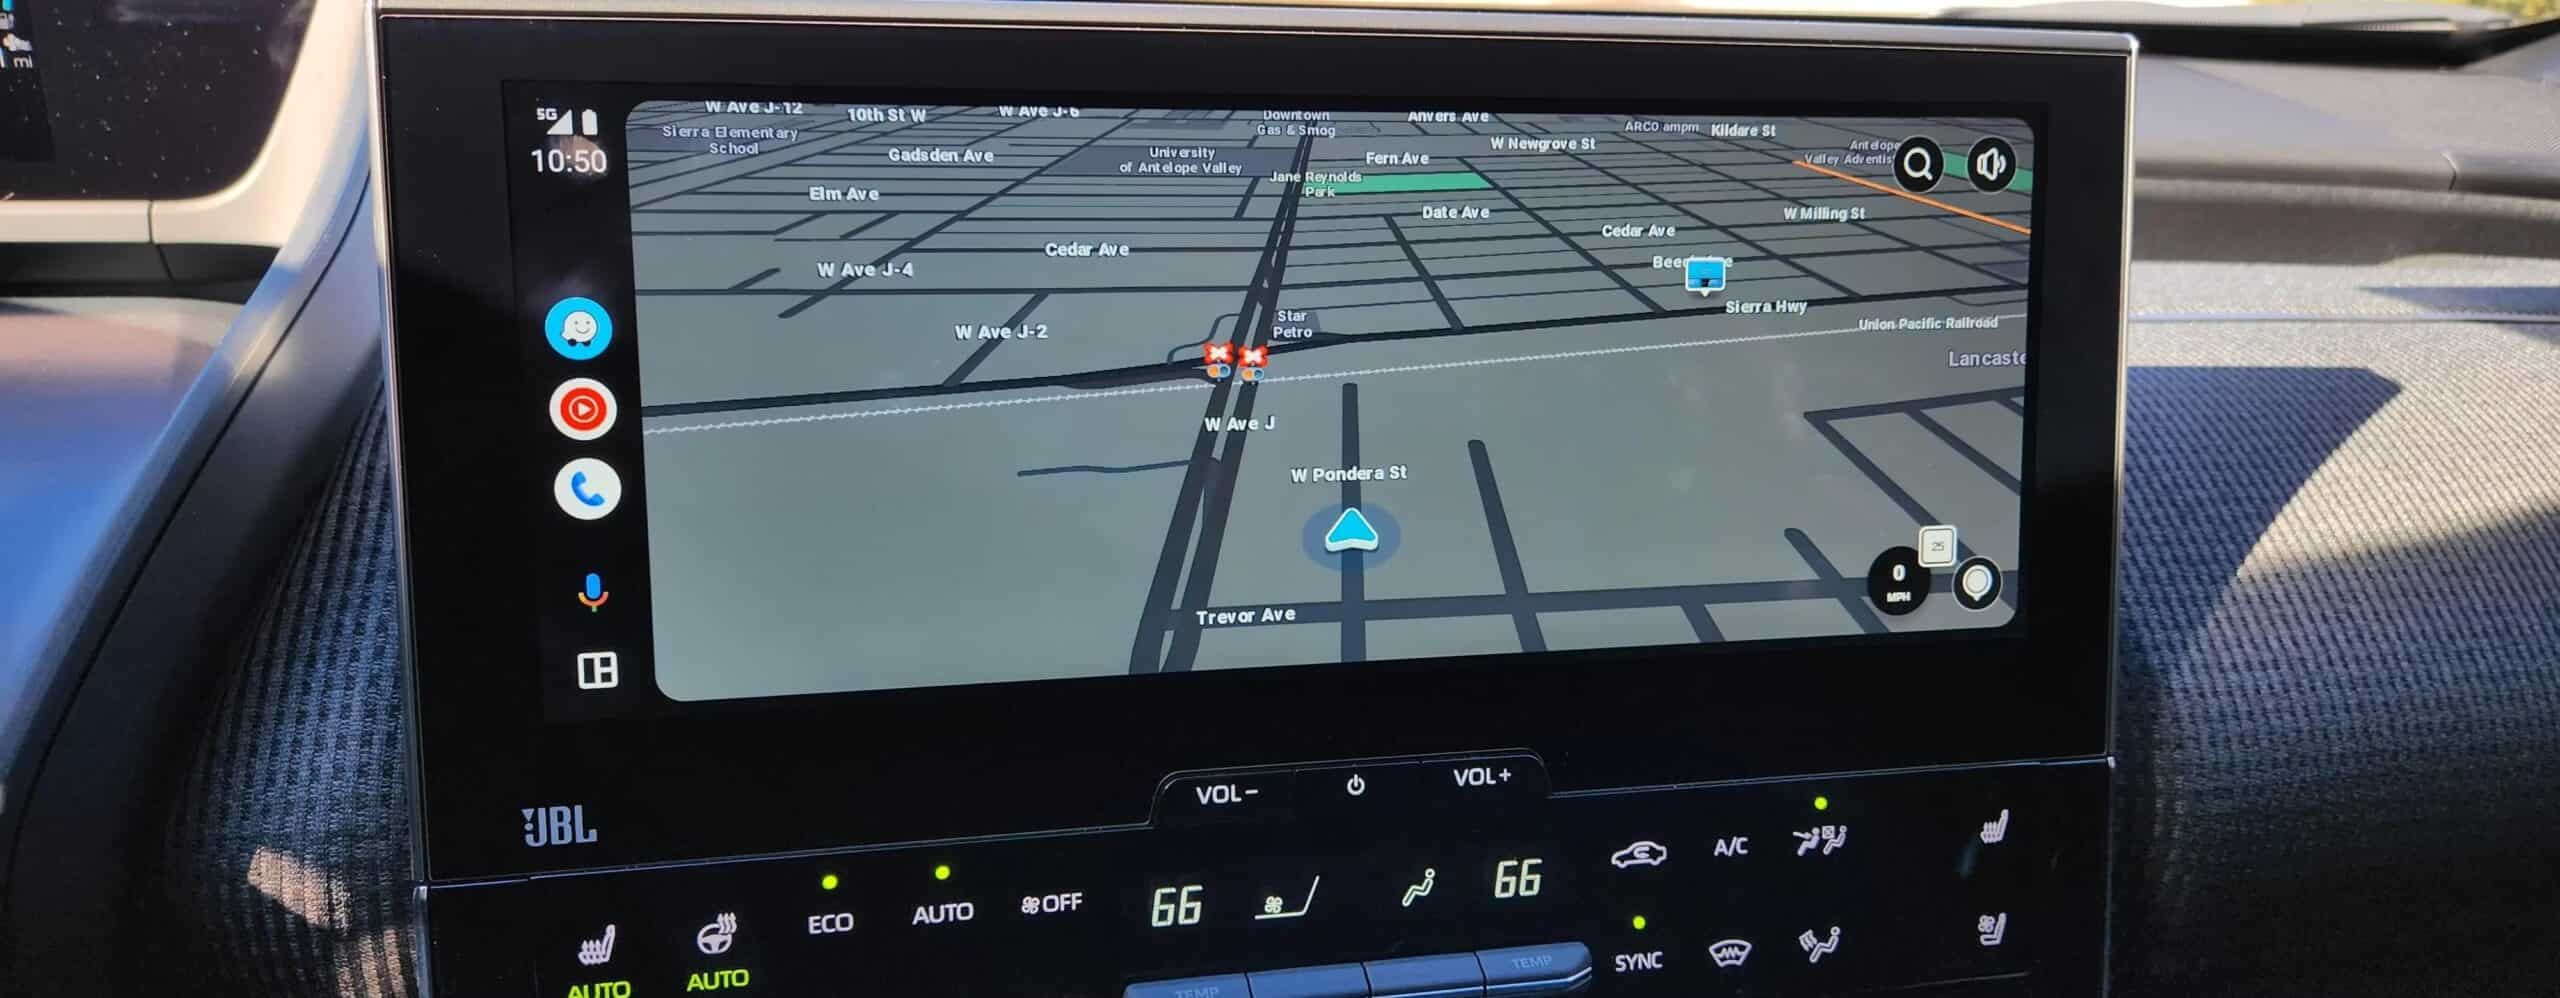 Waze ist sauer auf BMWs auf Android Auto